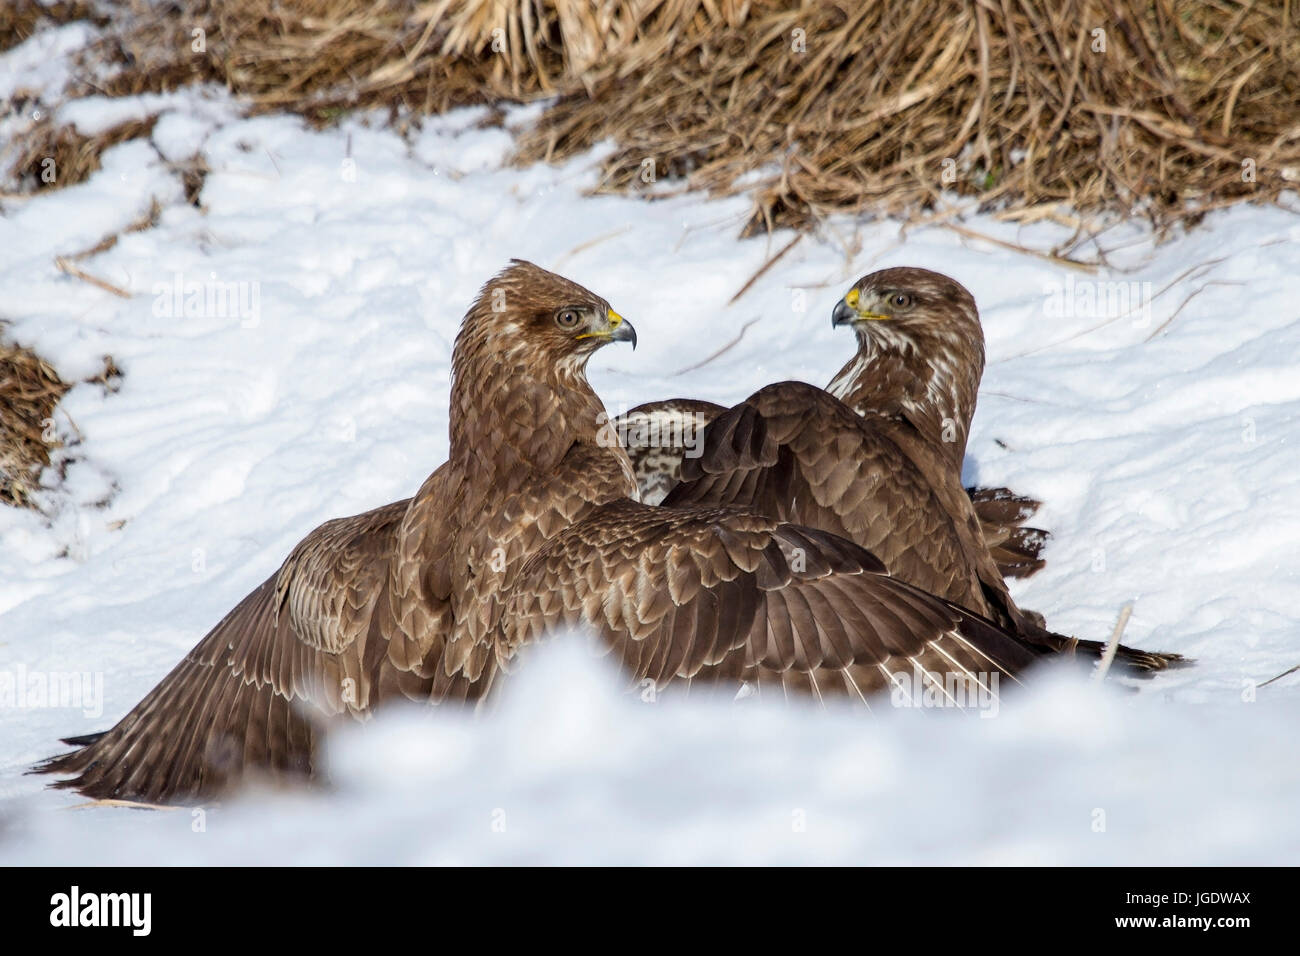 Common buzzards, Buteo buteo argue about feed, Mäusebussarde (Buteo buteo) streiten sich um Futter Stock Photo